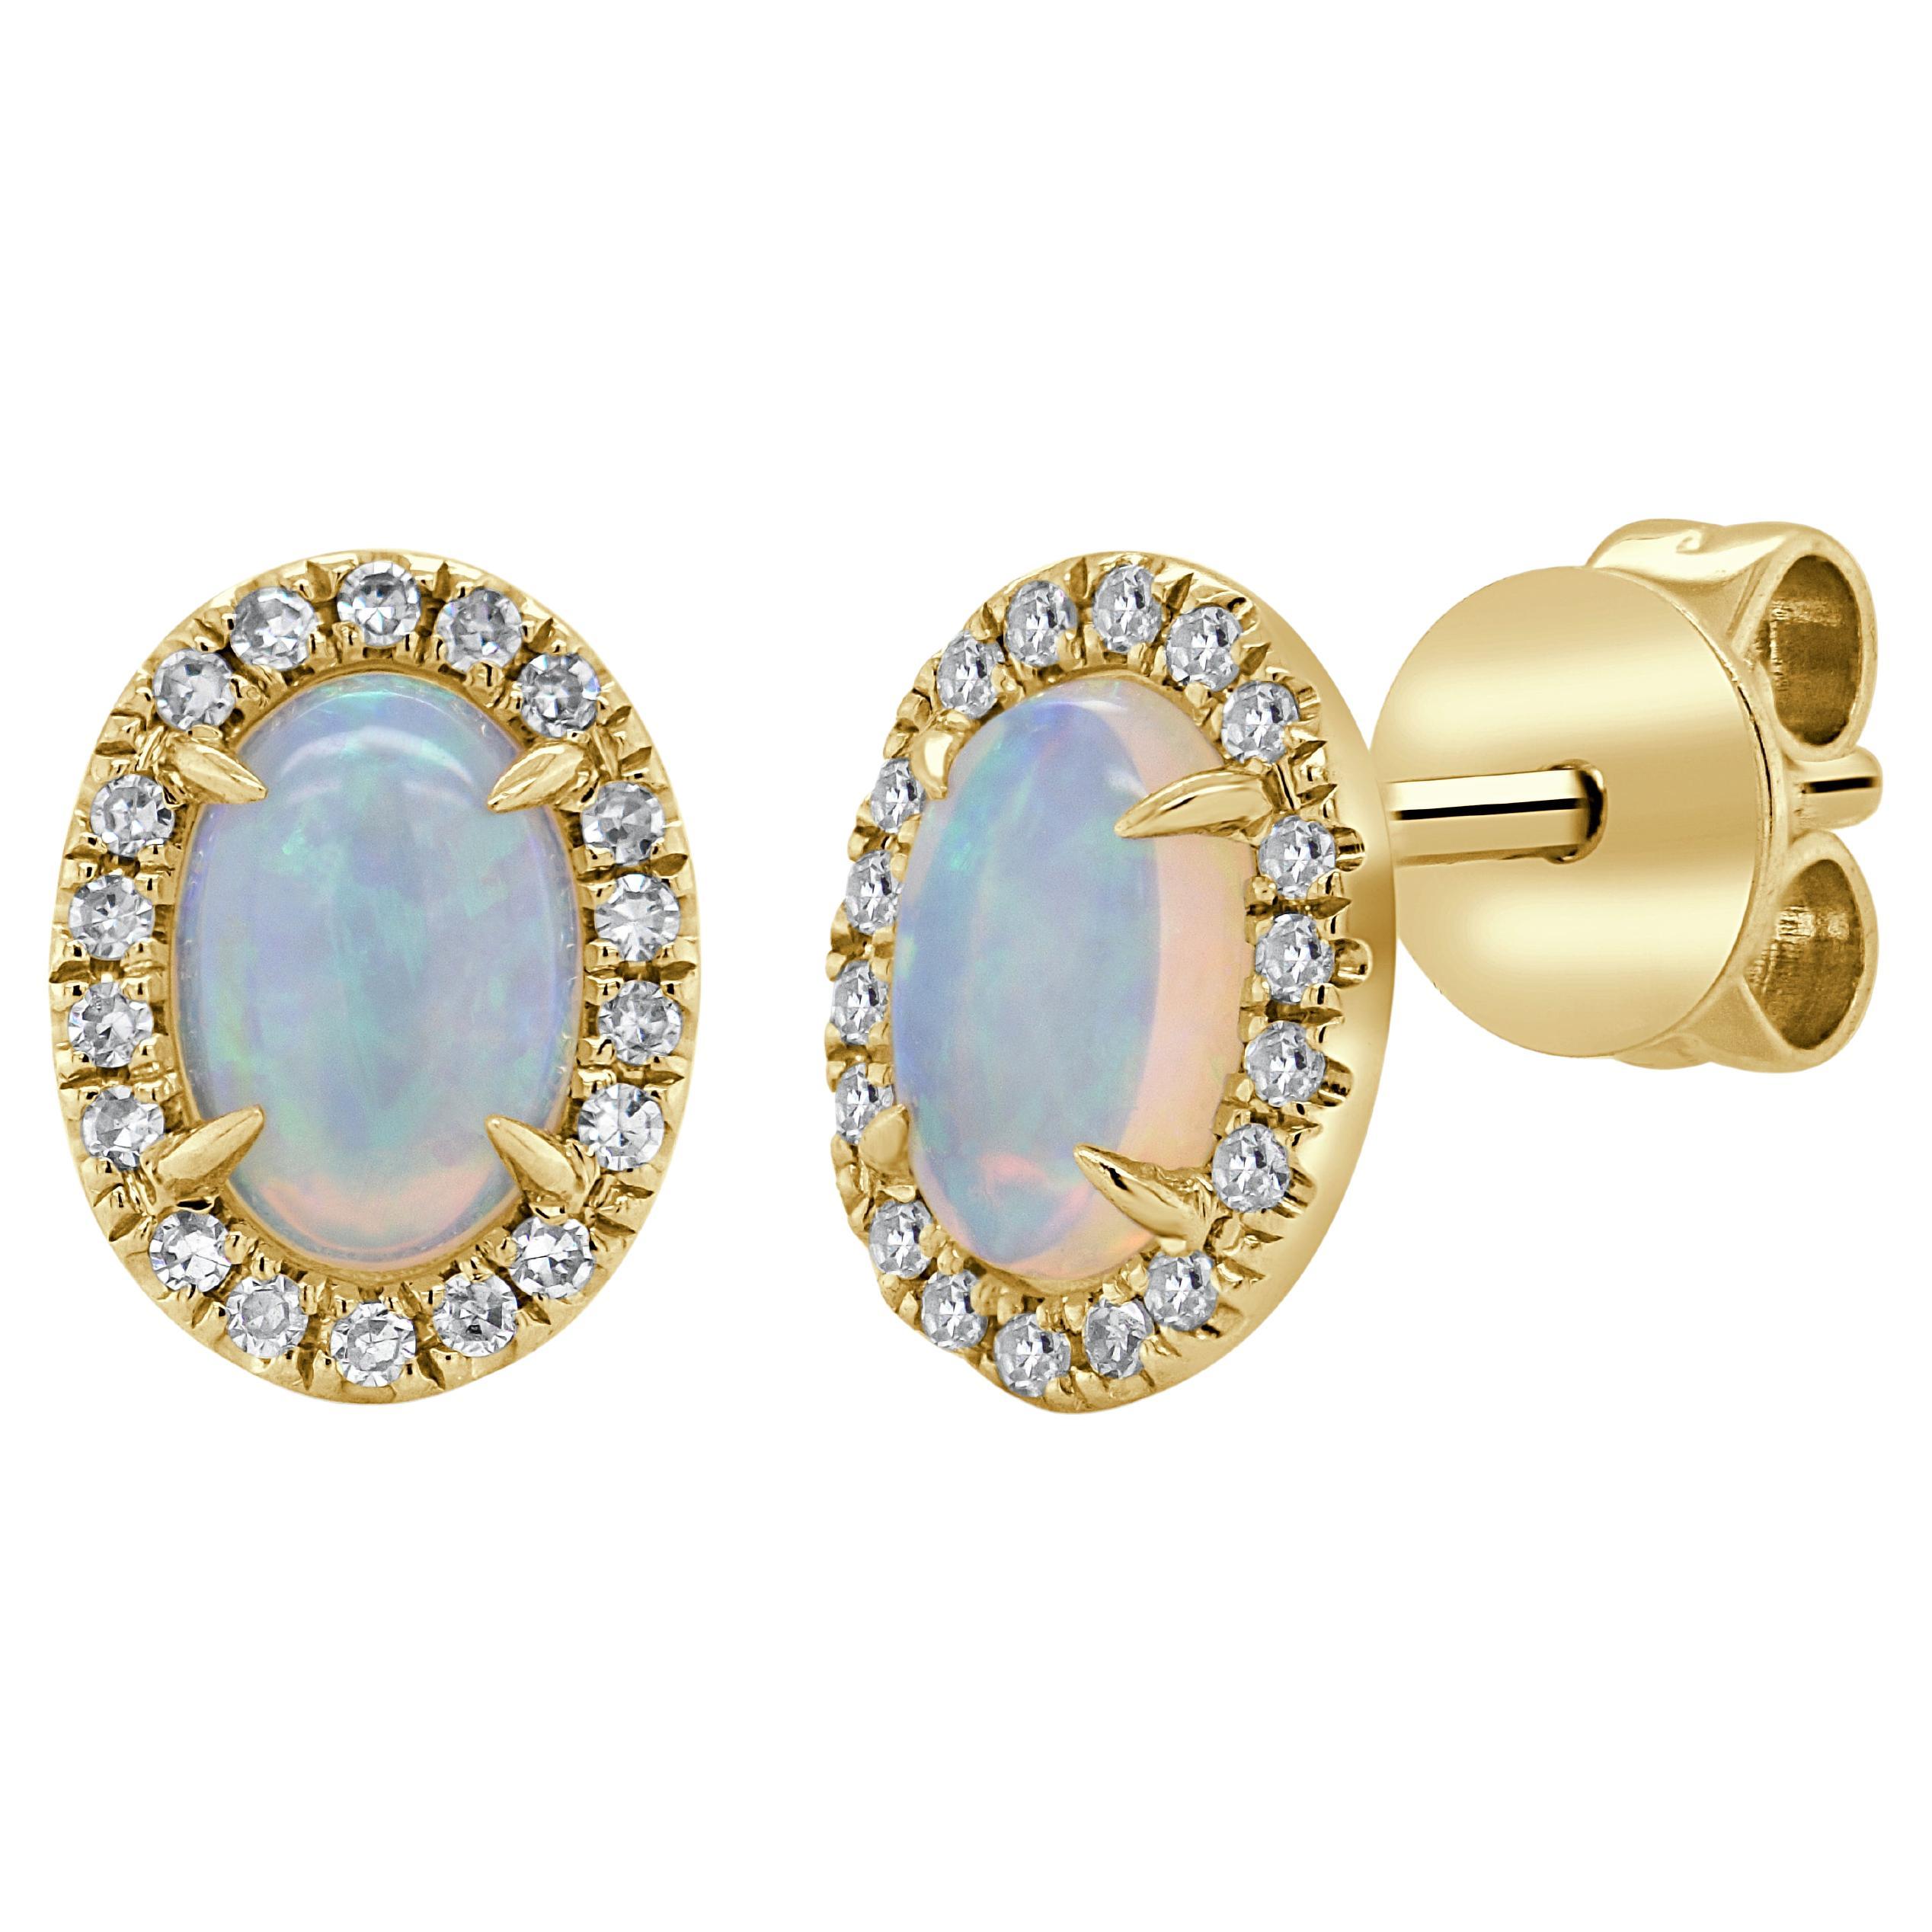 14k Gold Oval Opal & Diamond Earrings